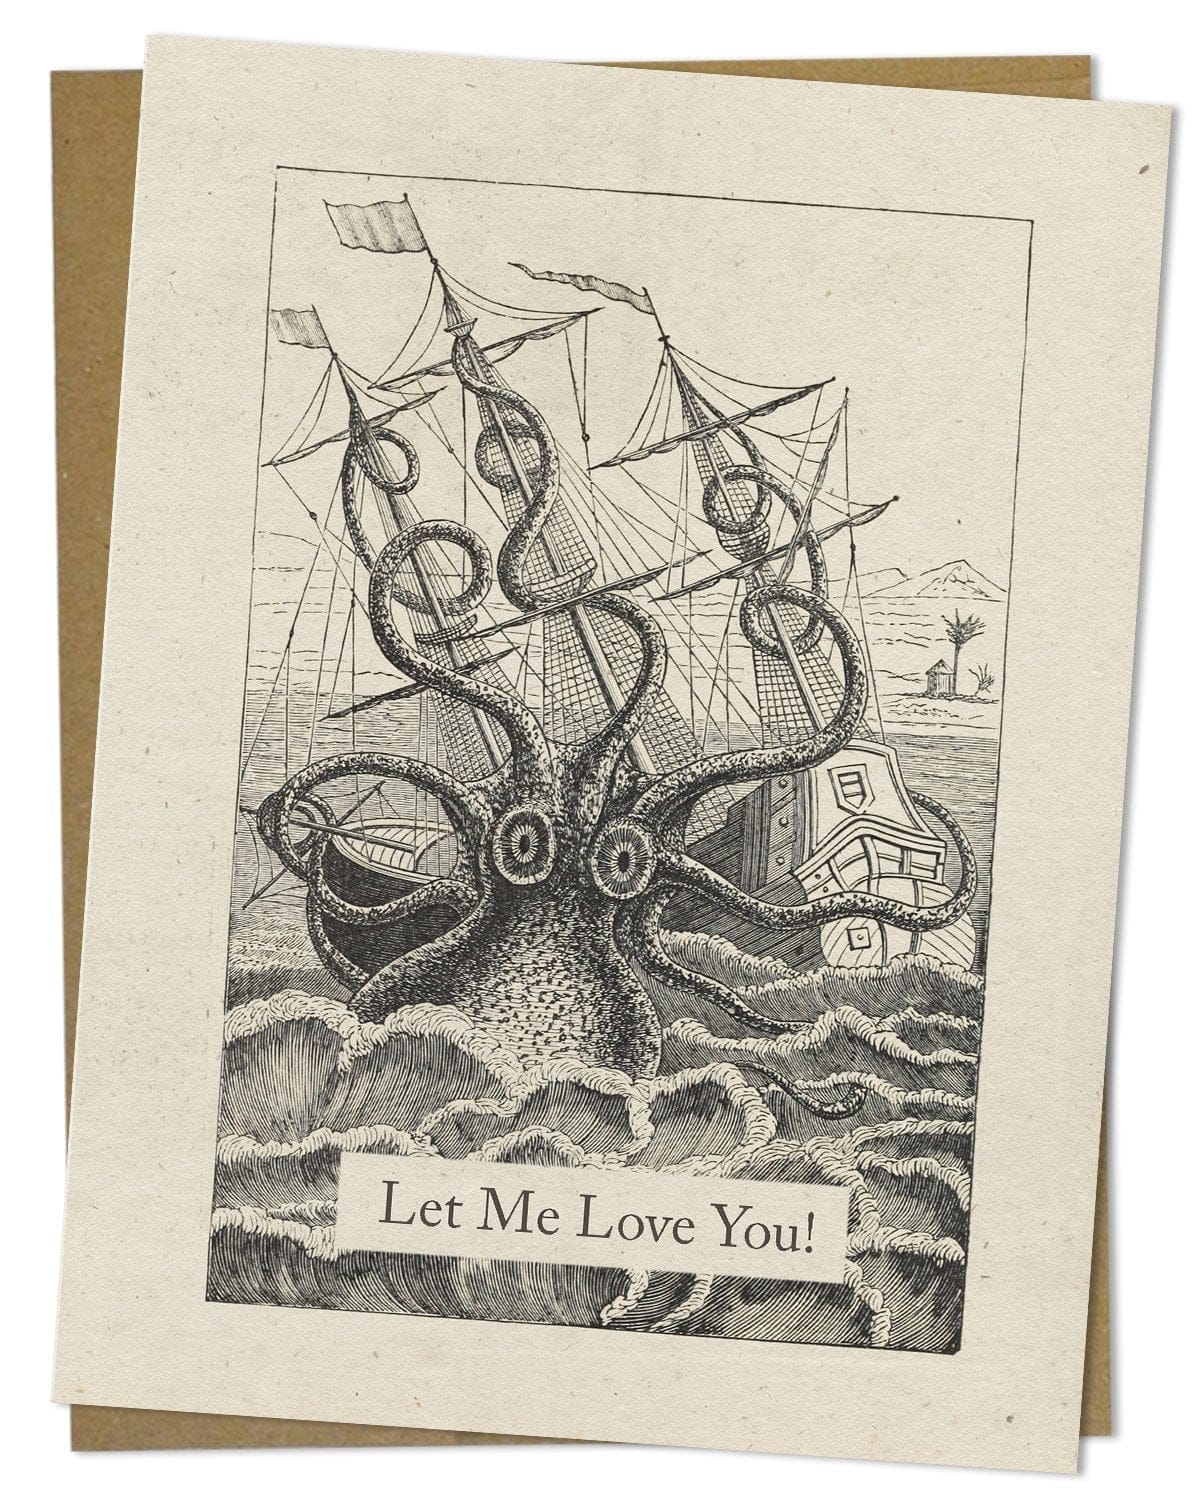 Let-Me-Love-You-Octopus-Card-Cognitive-Surplus-899.jpg